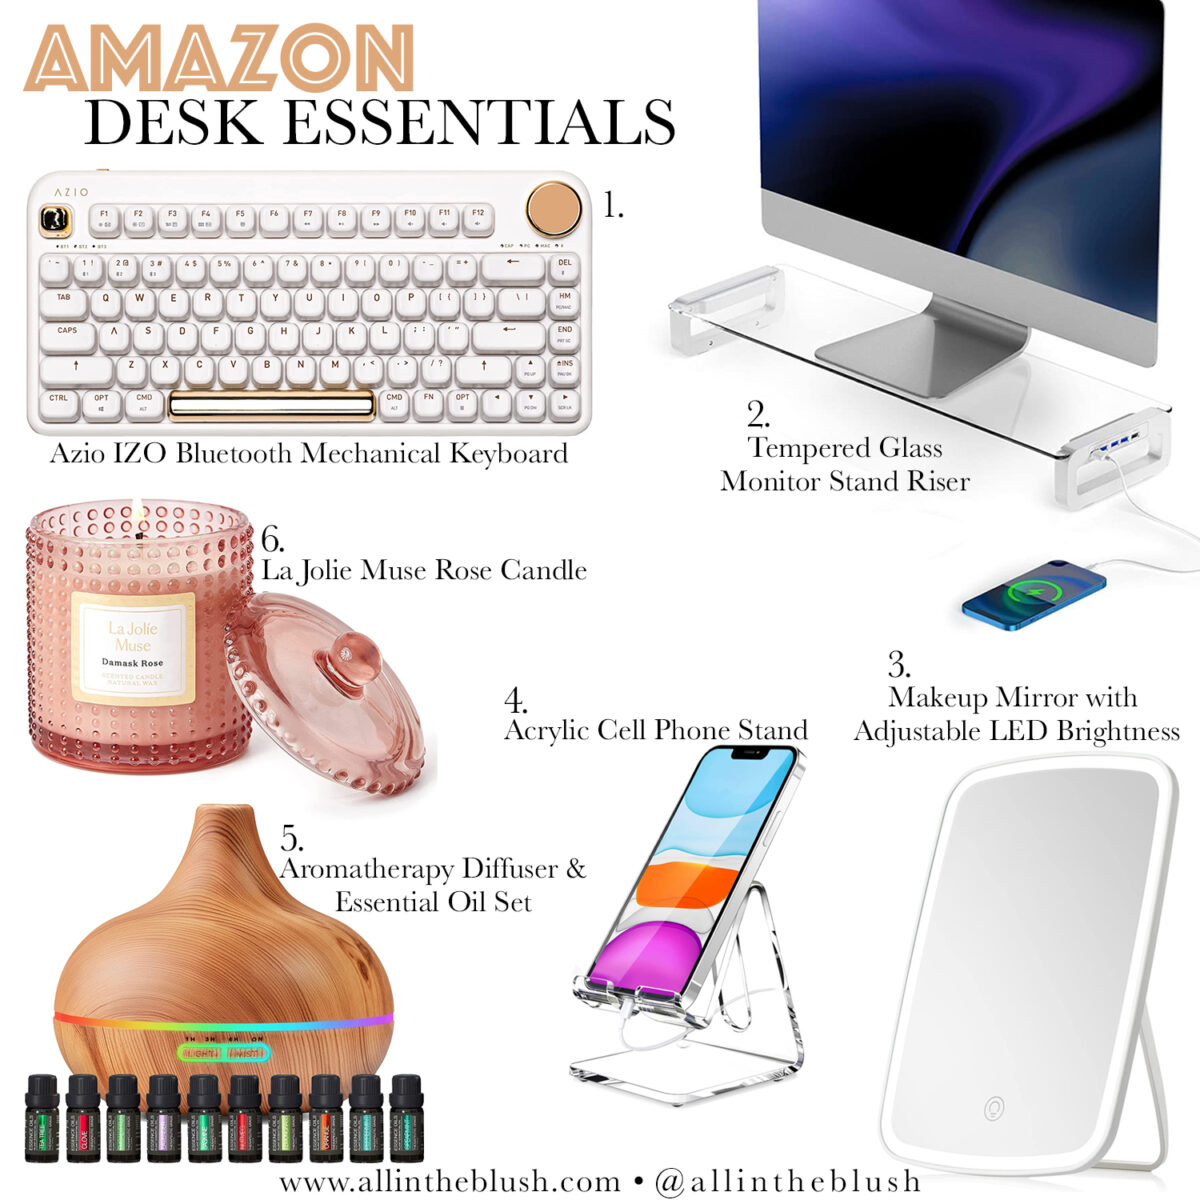 My Amazon Desk Essentials